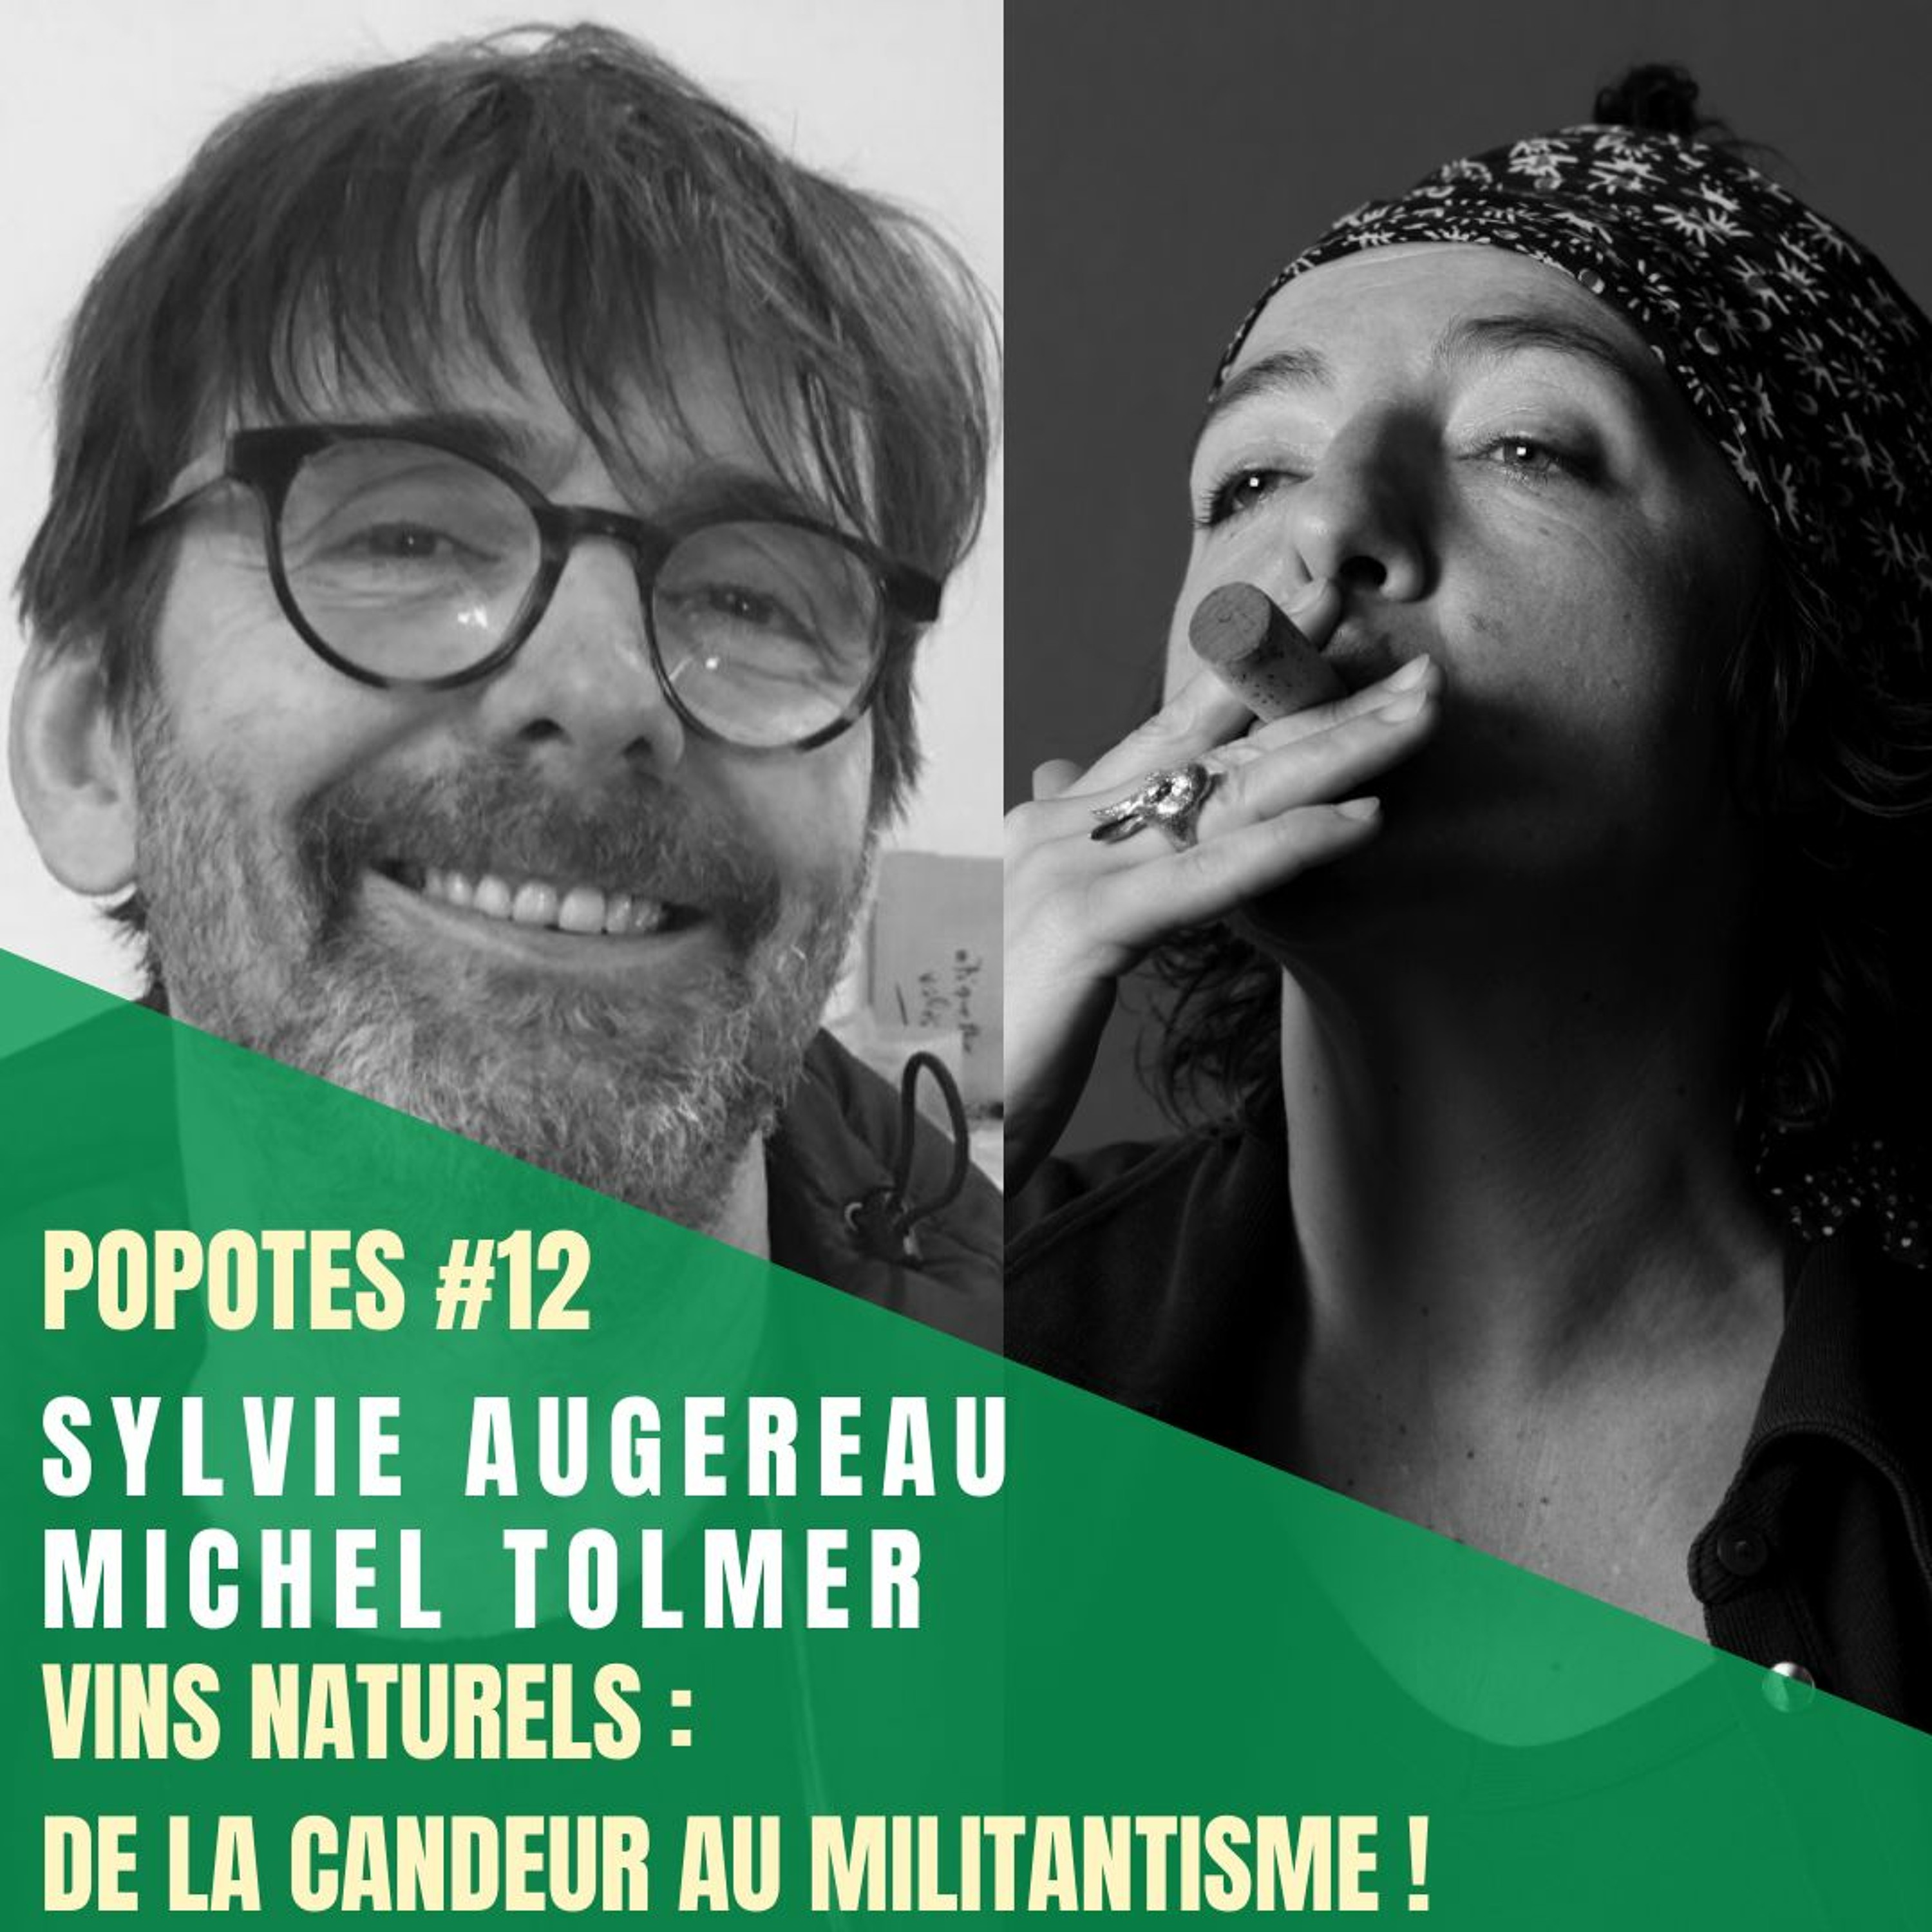 #12 Vins naturels : de la candeur au militantisme ! – avec Sylvie Augereau et Michel Tolmer